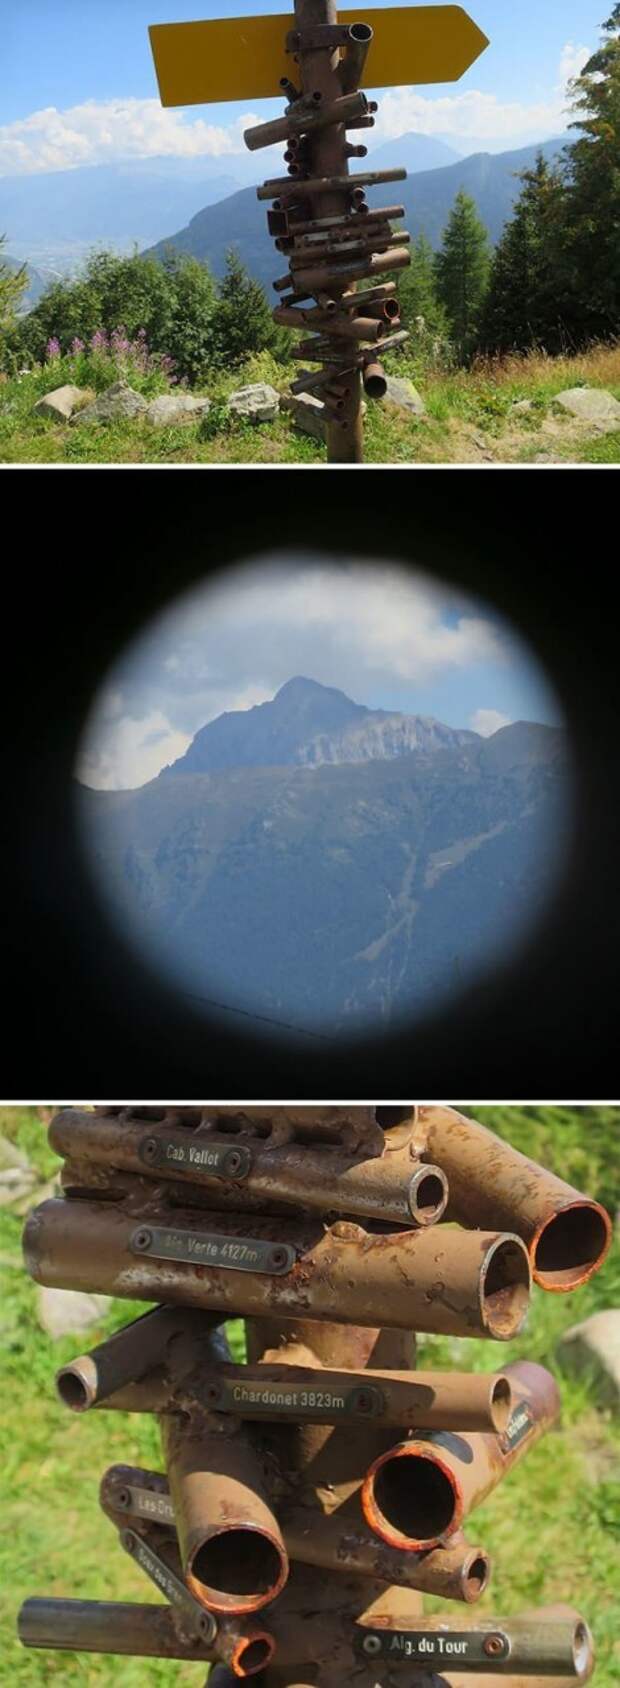 Подзорные трубы для рассматривания окрестных гор в Швейцарии. Каждая труба направлена на определенную гору идеи, необычно, нестандартно, нестандартные идеи, оригинально, оригинальные решения, проблемы, решения